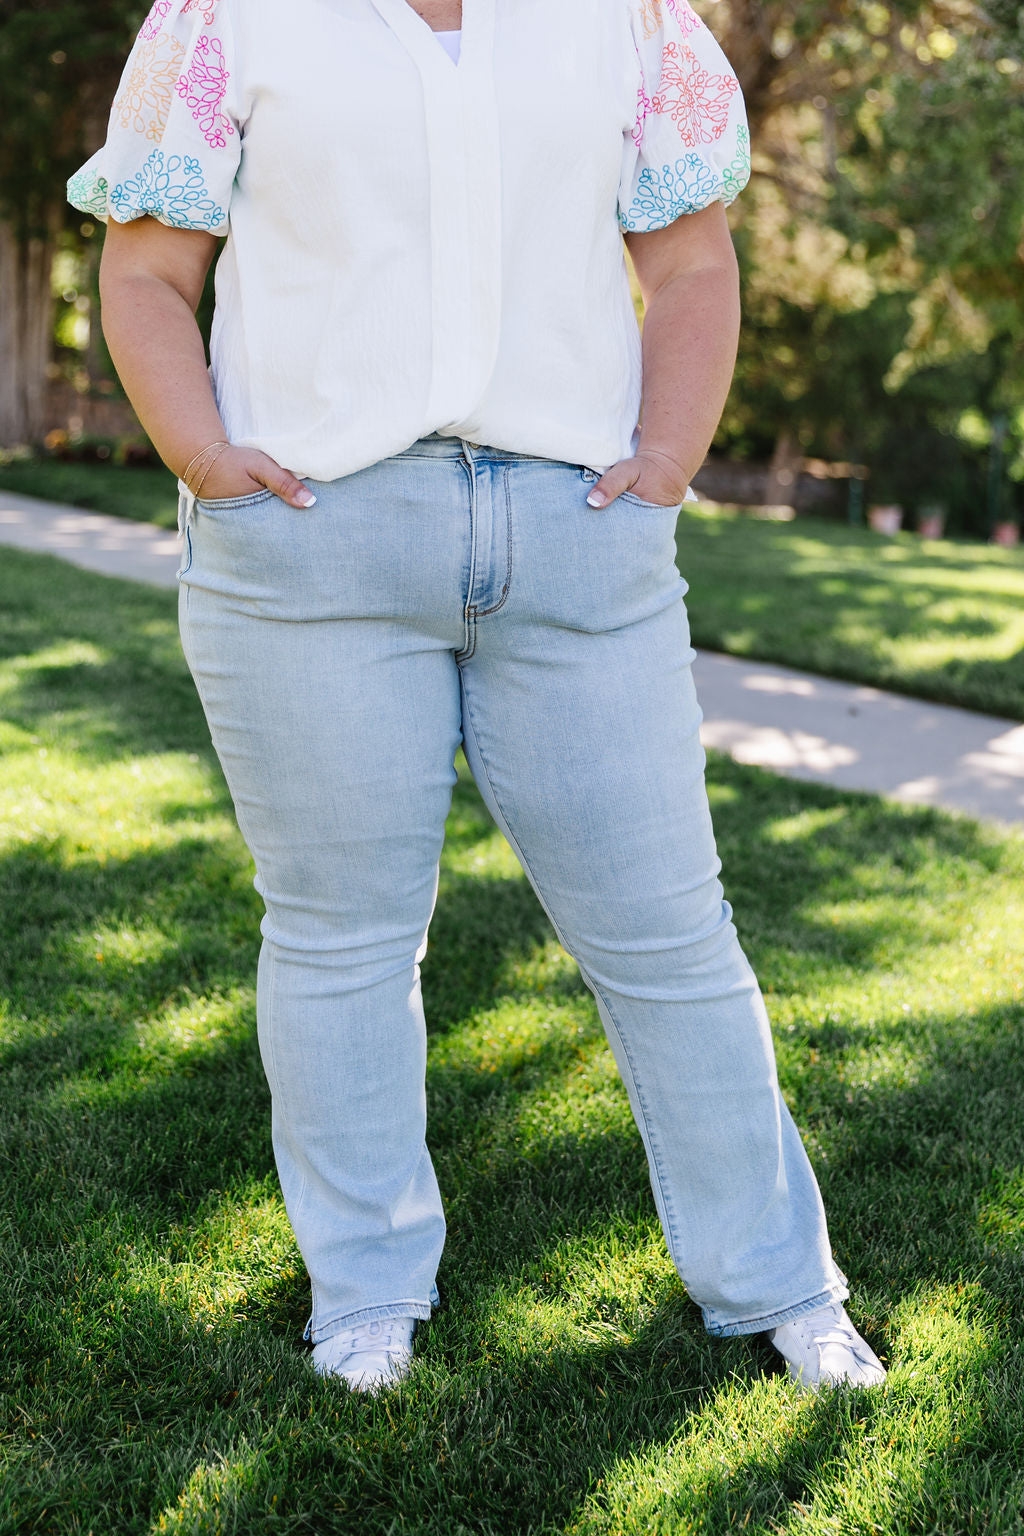 Coronado Jeans (Size 7 to 24W)